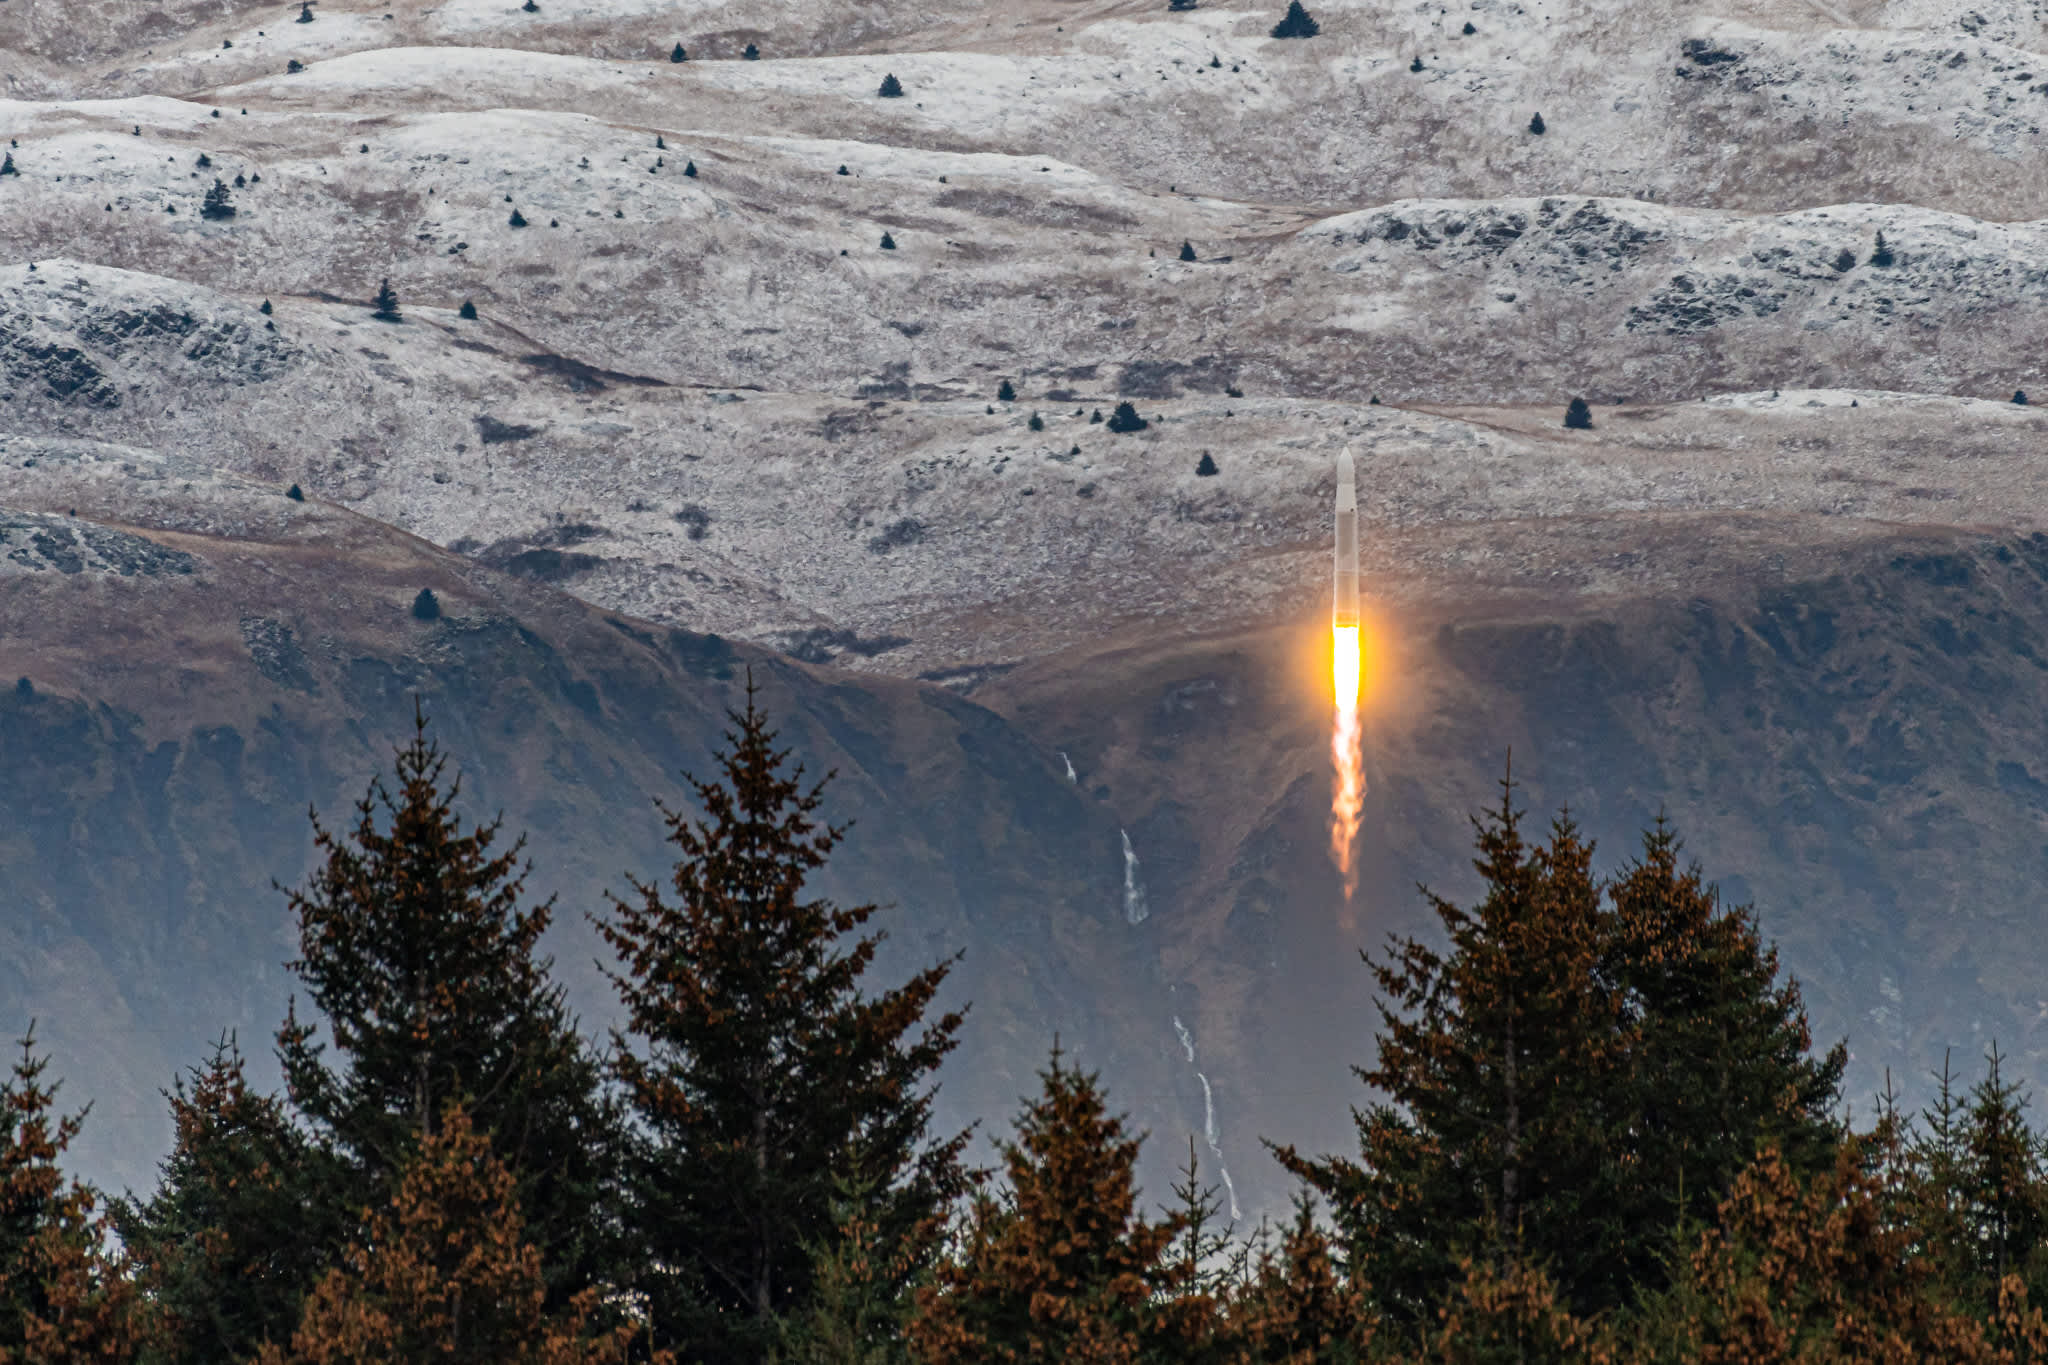 پرتاب موفق راکت استارتاپ Astra به فضا برای اولین بار [تماشا کنید]